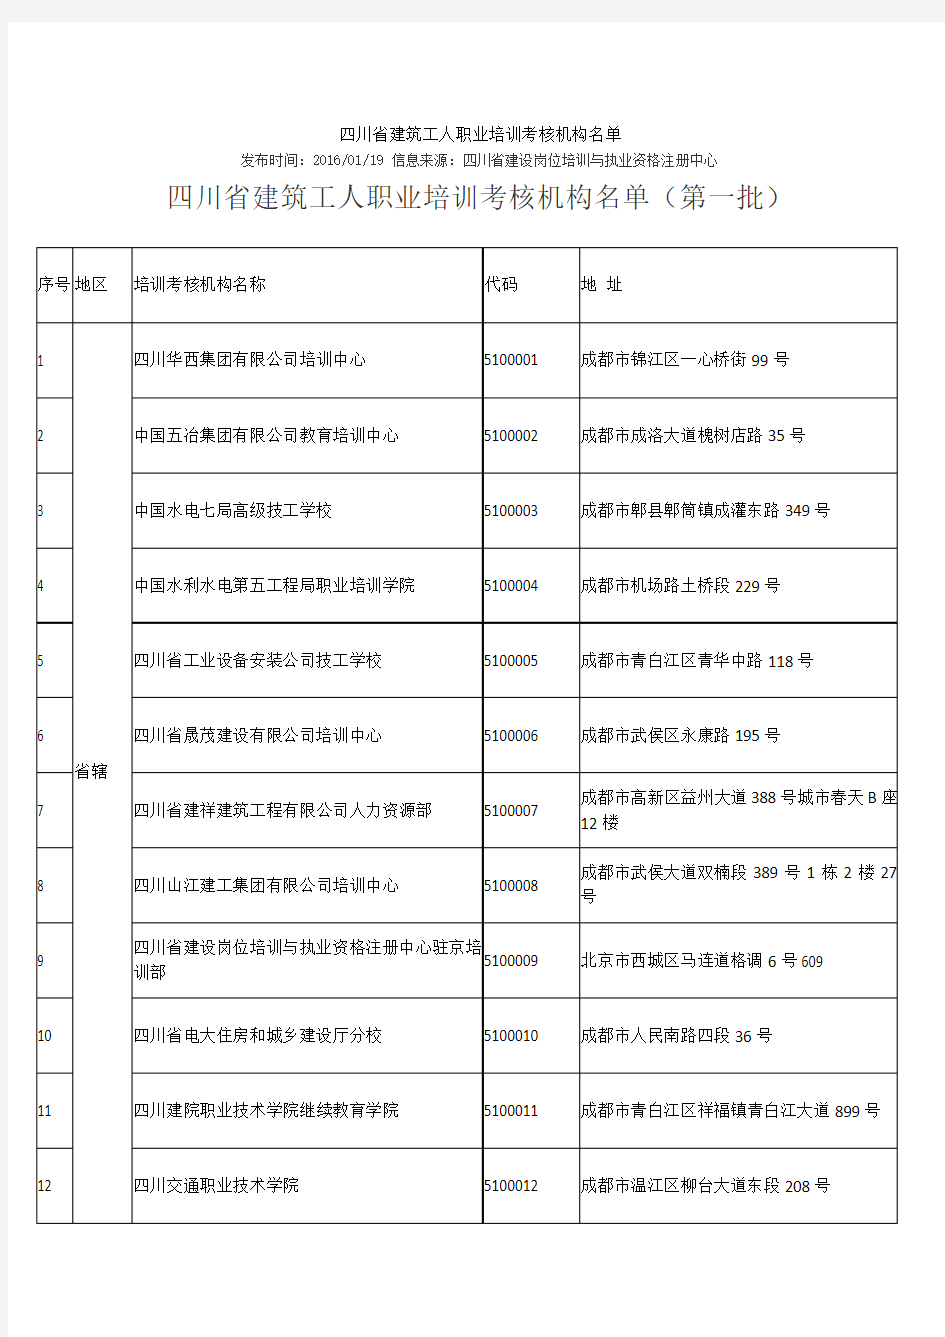 四川省建筑工人职业培训考核机构0119